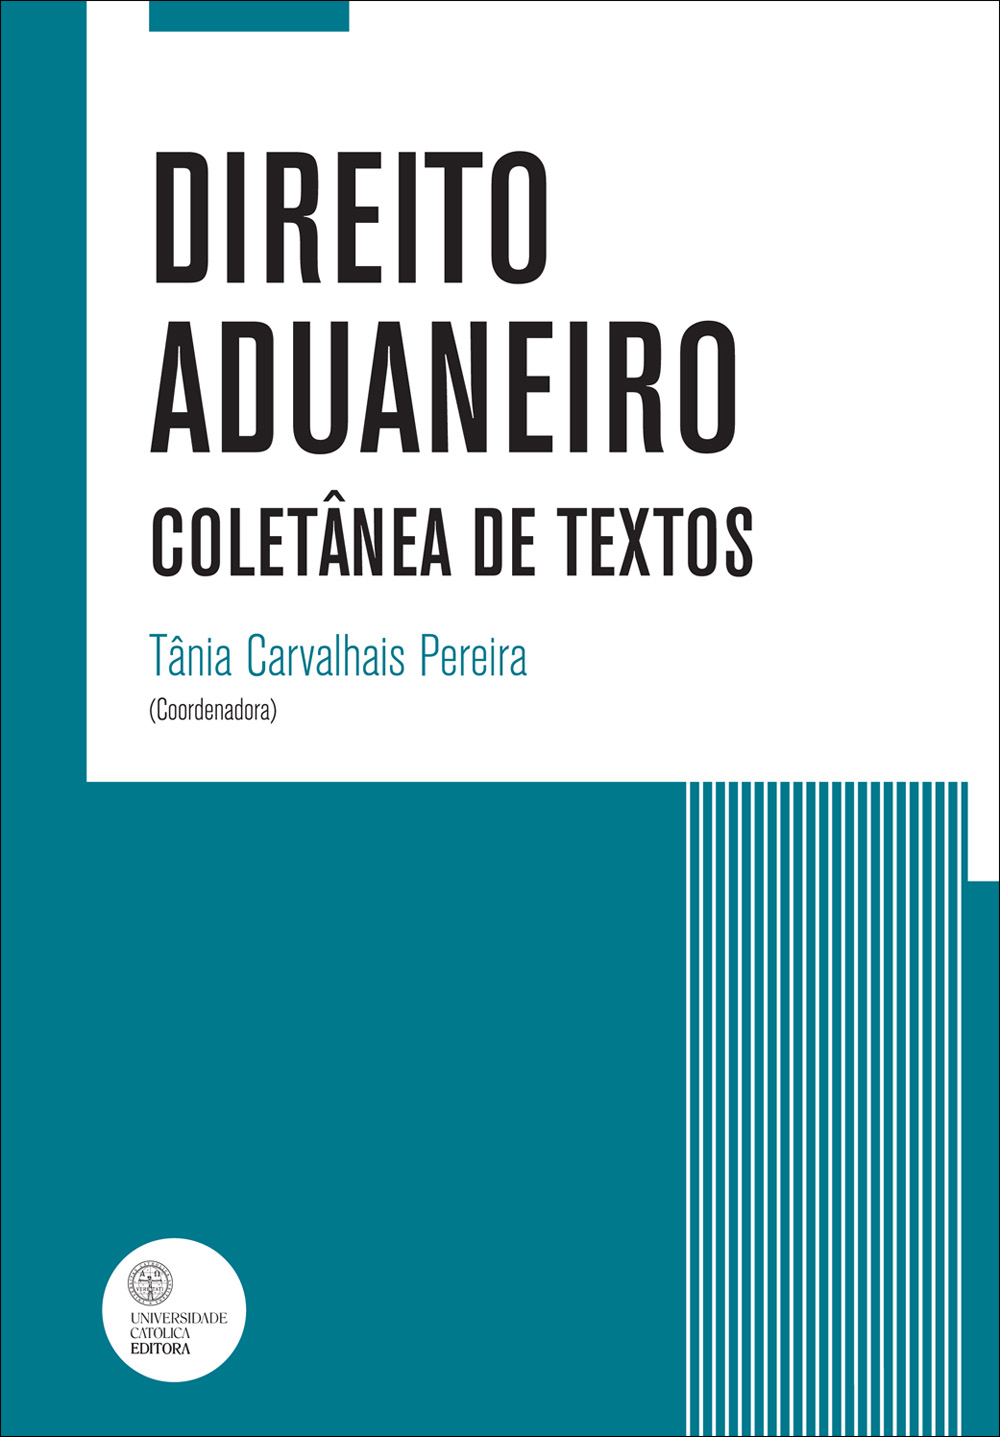 DIREITO ADUANEIRO - Coletânea de textos